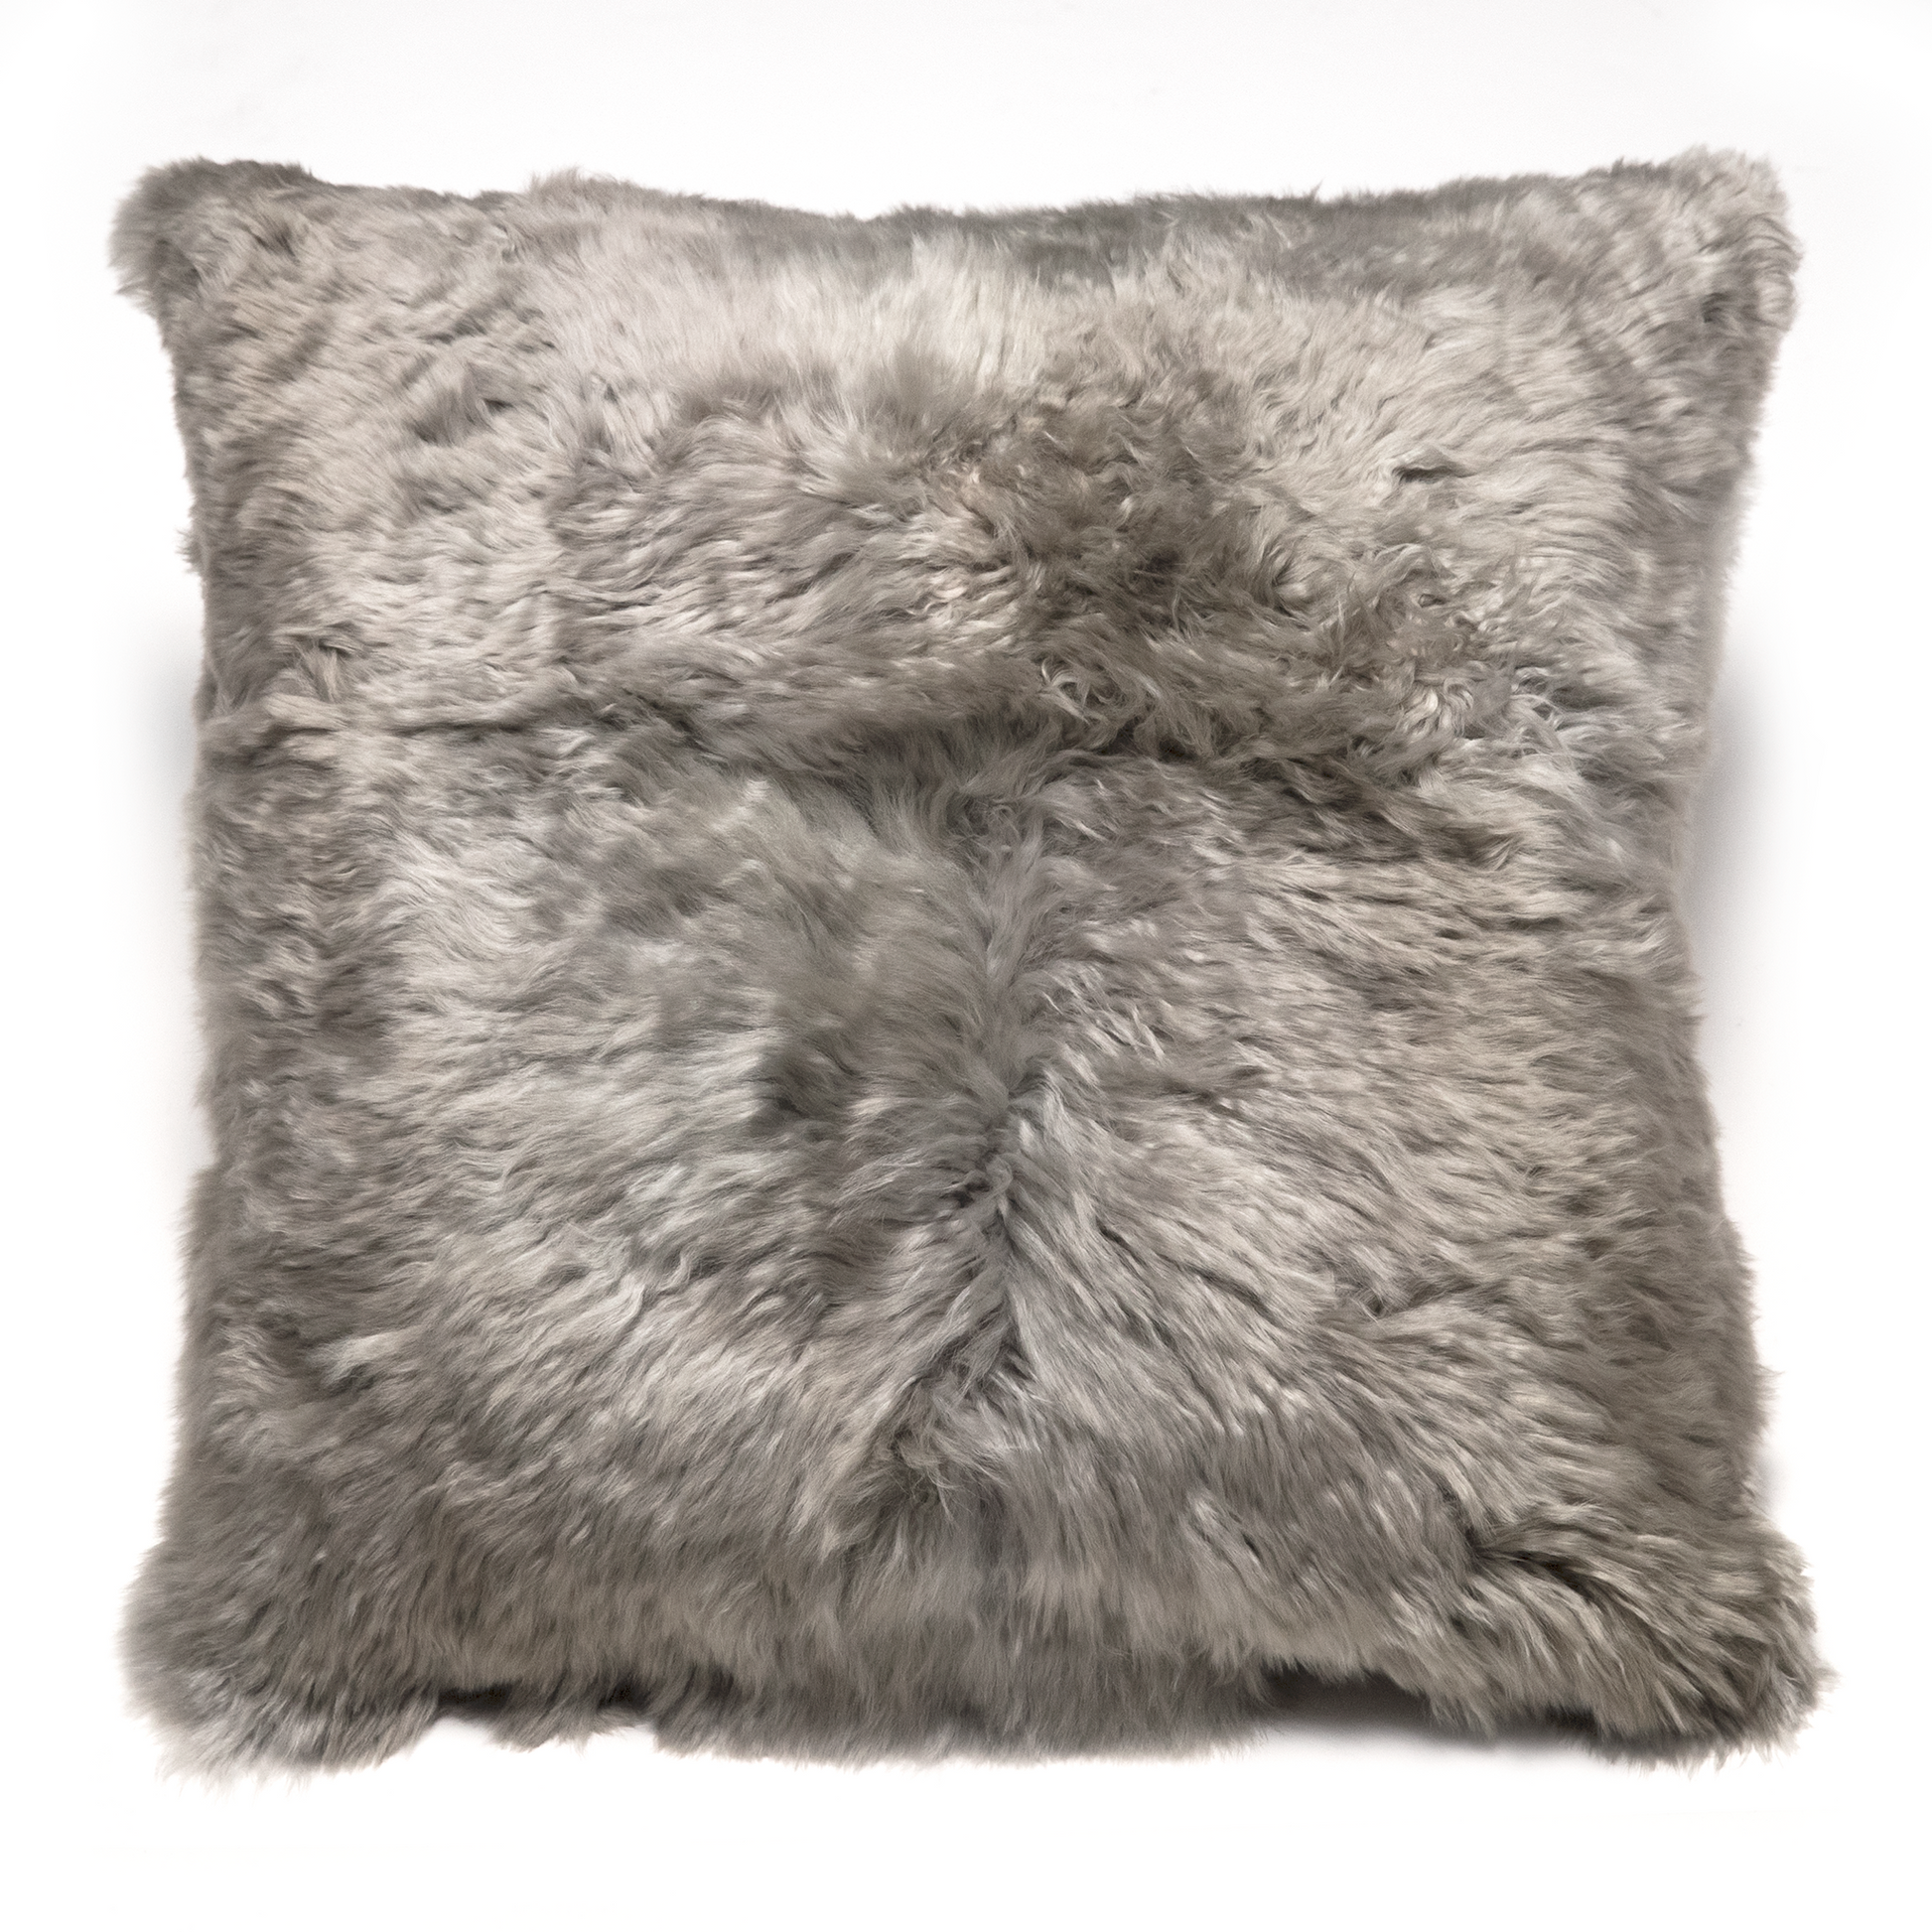 Intiearth Suri Alpaca Fur Decorative pillow gray color